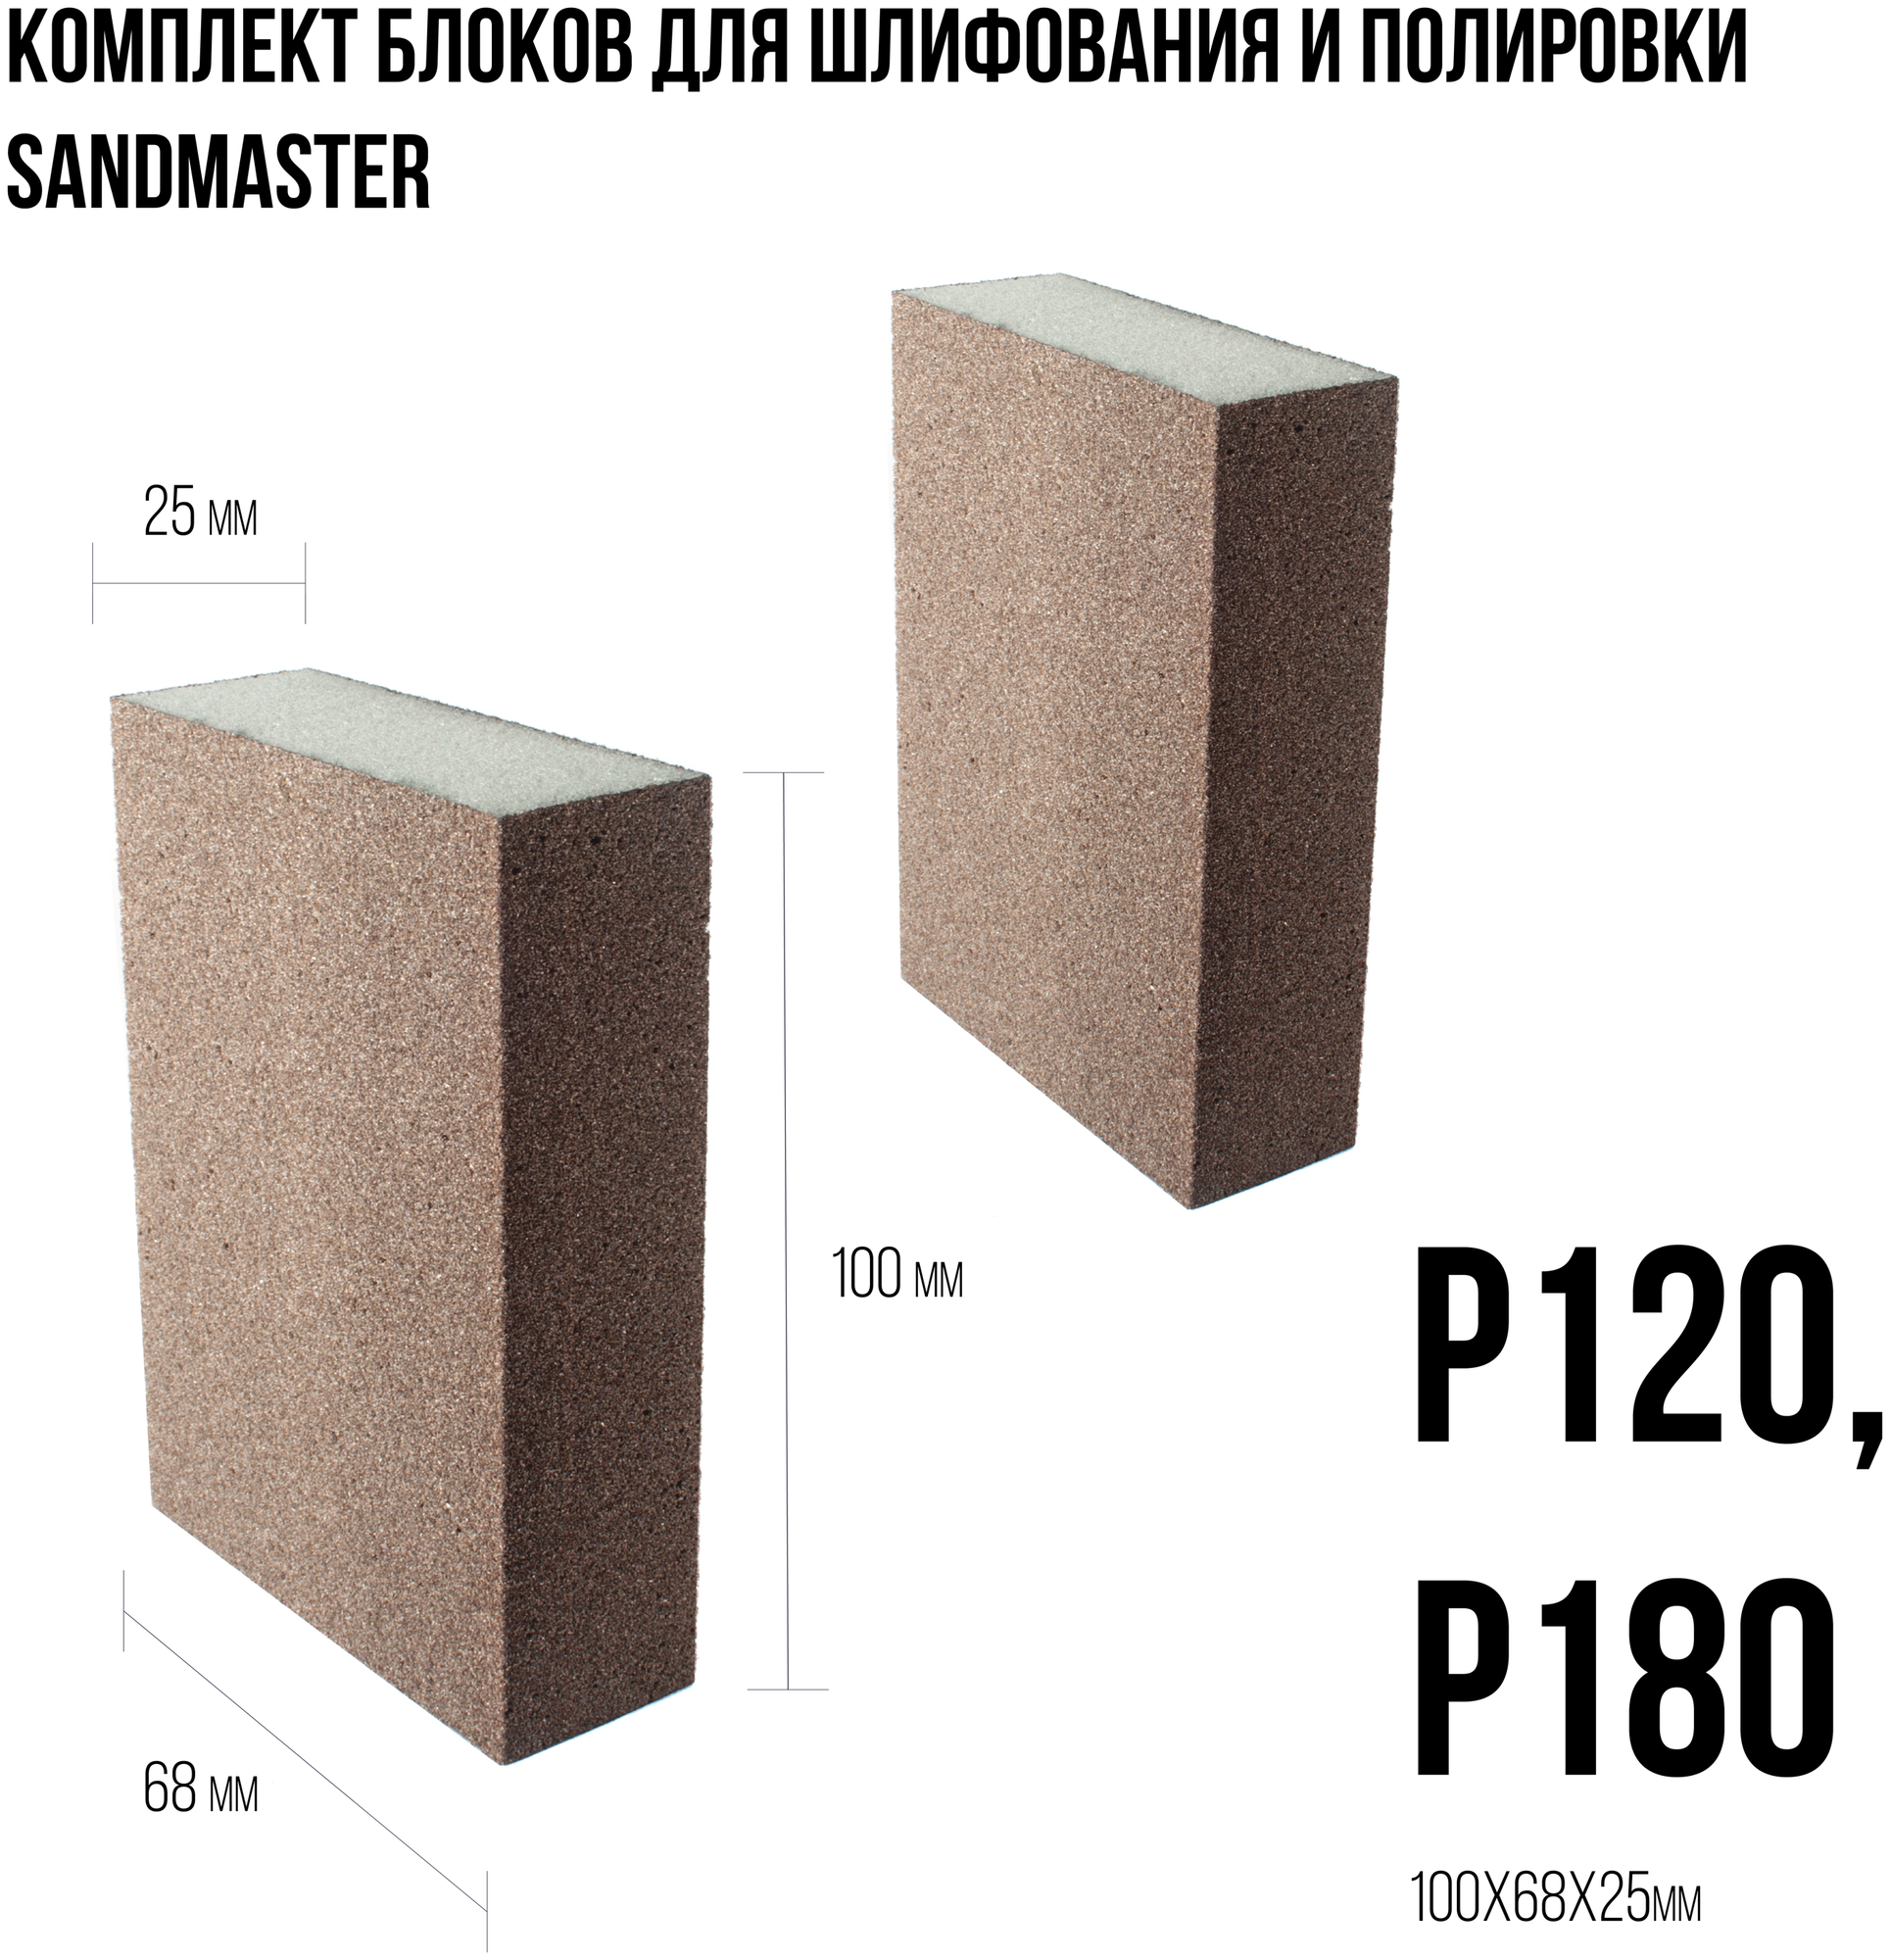 Комплект блоков для шлифования и полировки Sandmaster размером 100 x 68 x 25mm, следующих градаций: Р120, Р180. - фотография № 1